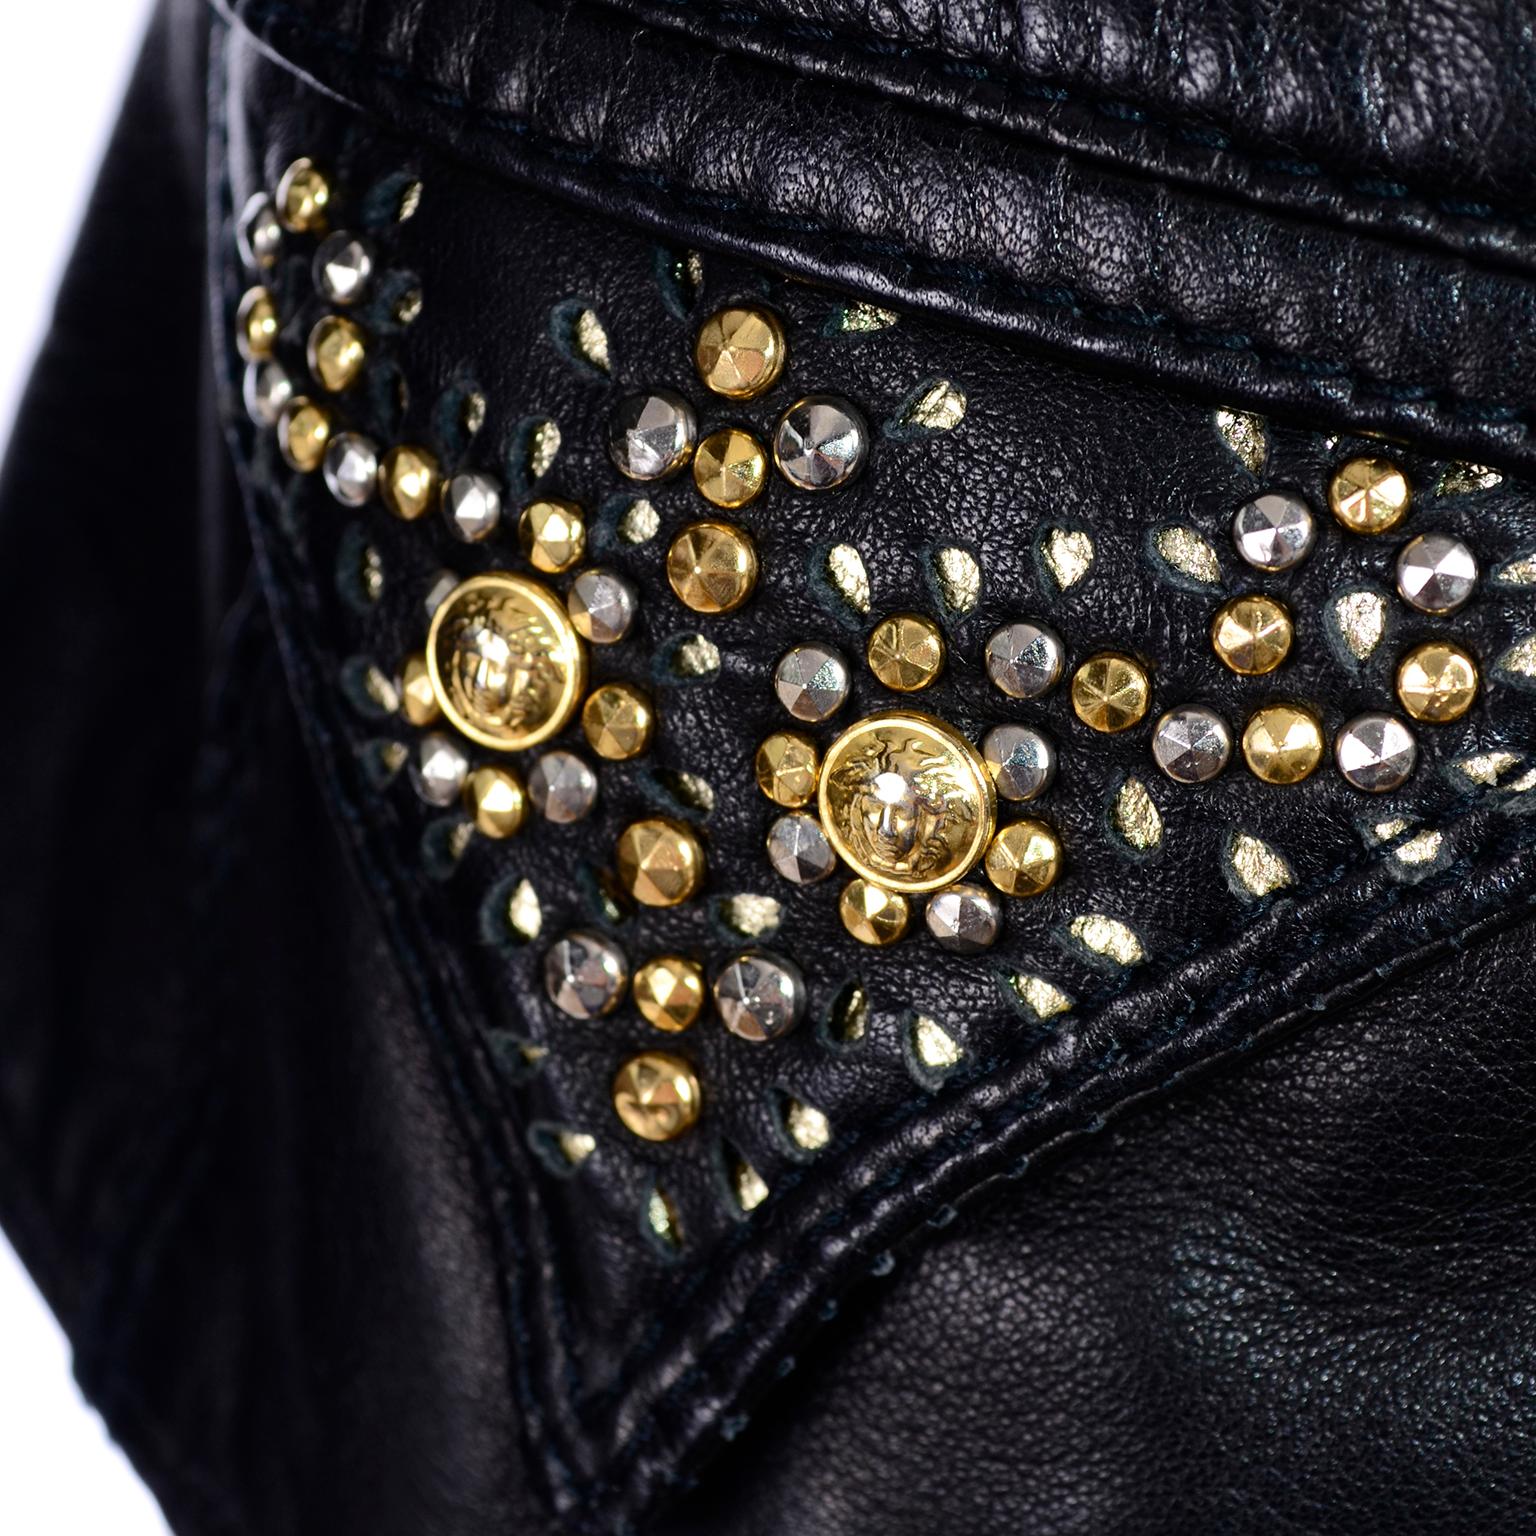 Gianni Versace Vintage Black Lambskin Leather Moto Jacket W Medusa Studs 9